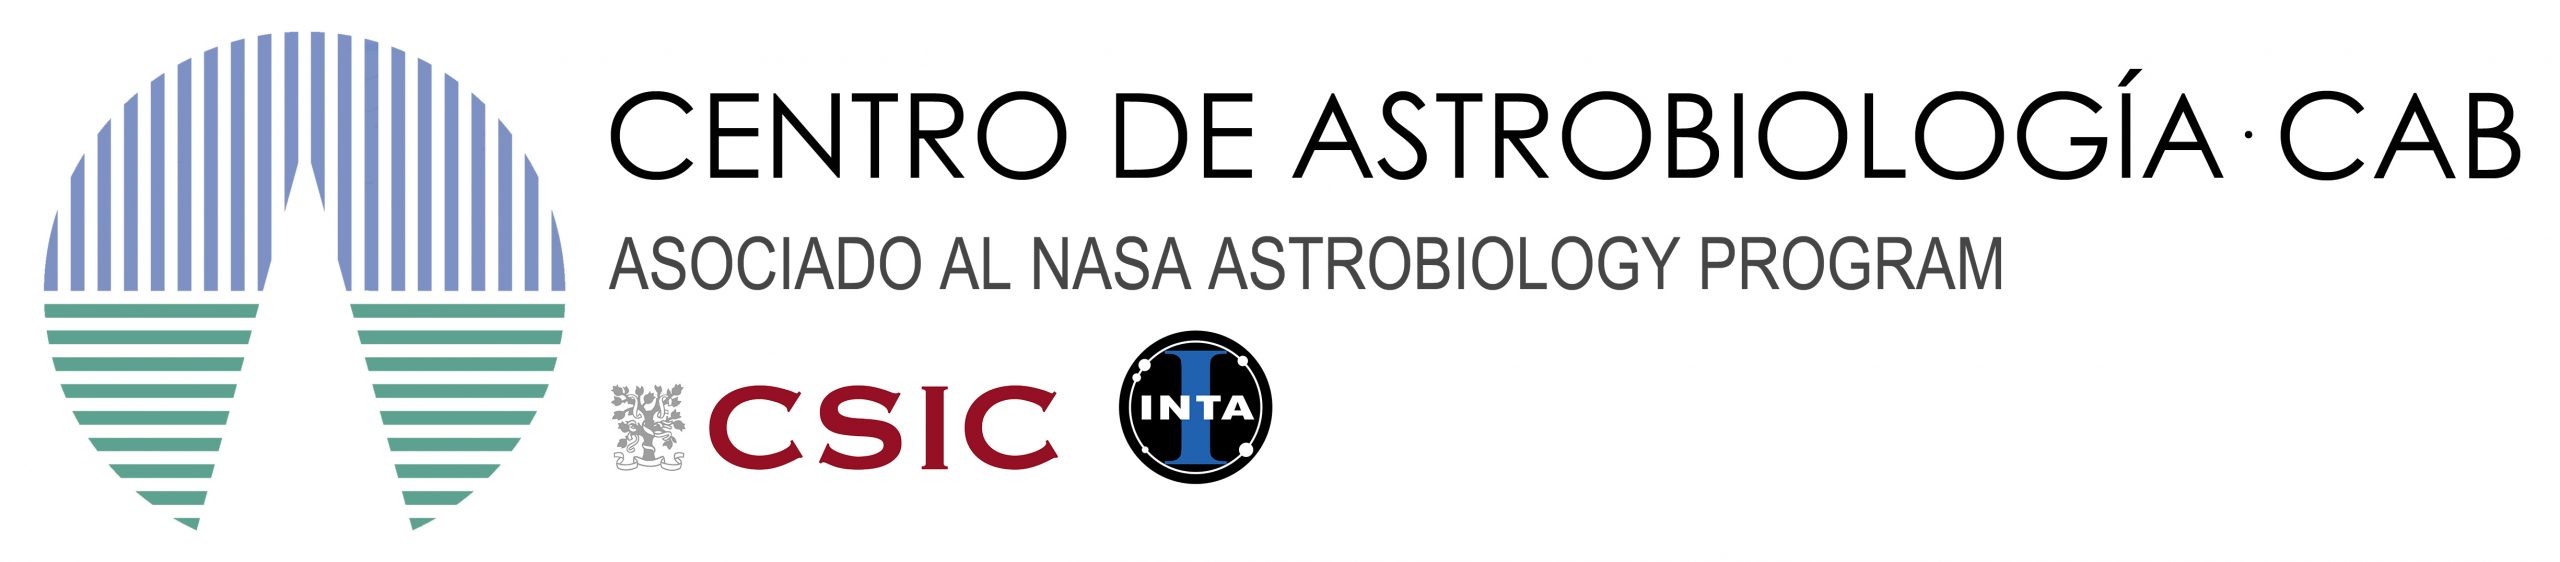 0.LOGO CAB Oficial CSIC-INTA NASA_10052021